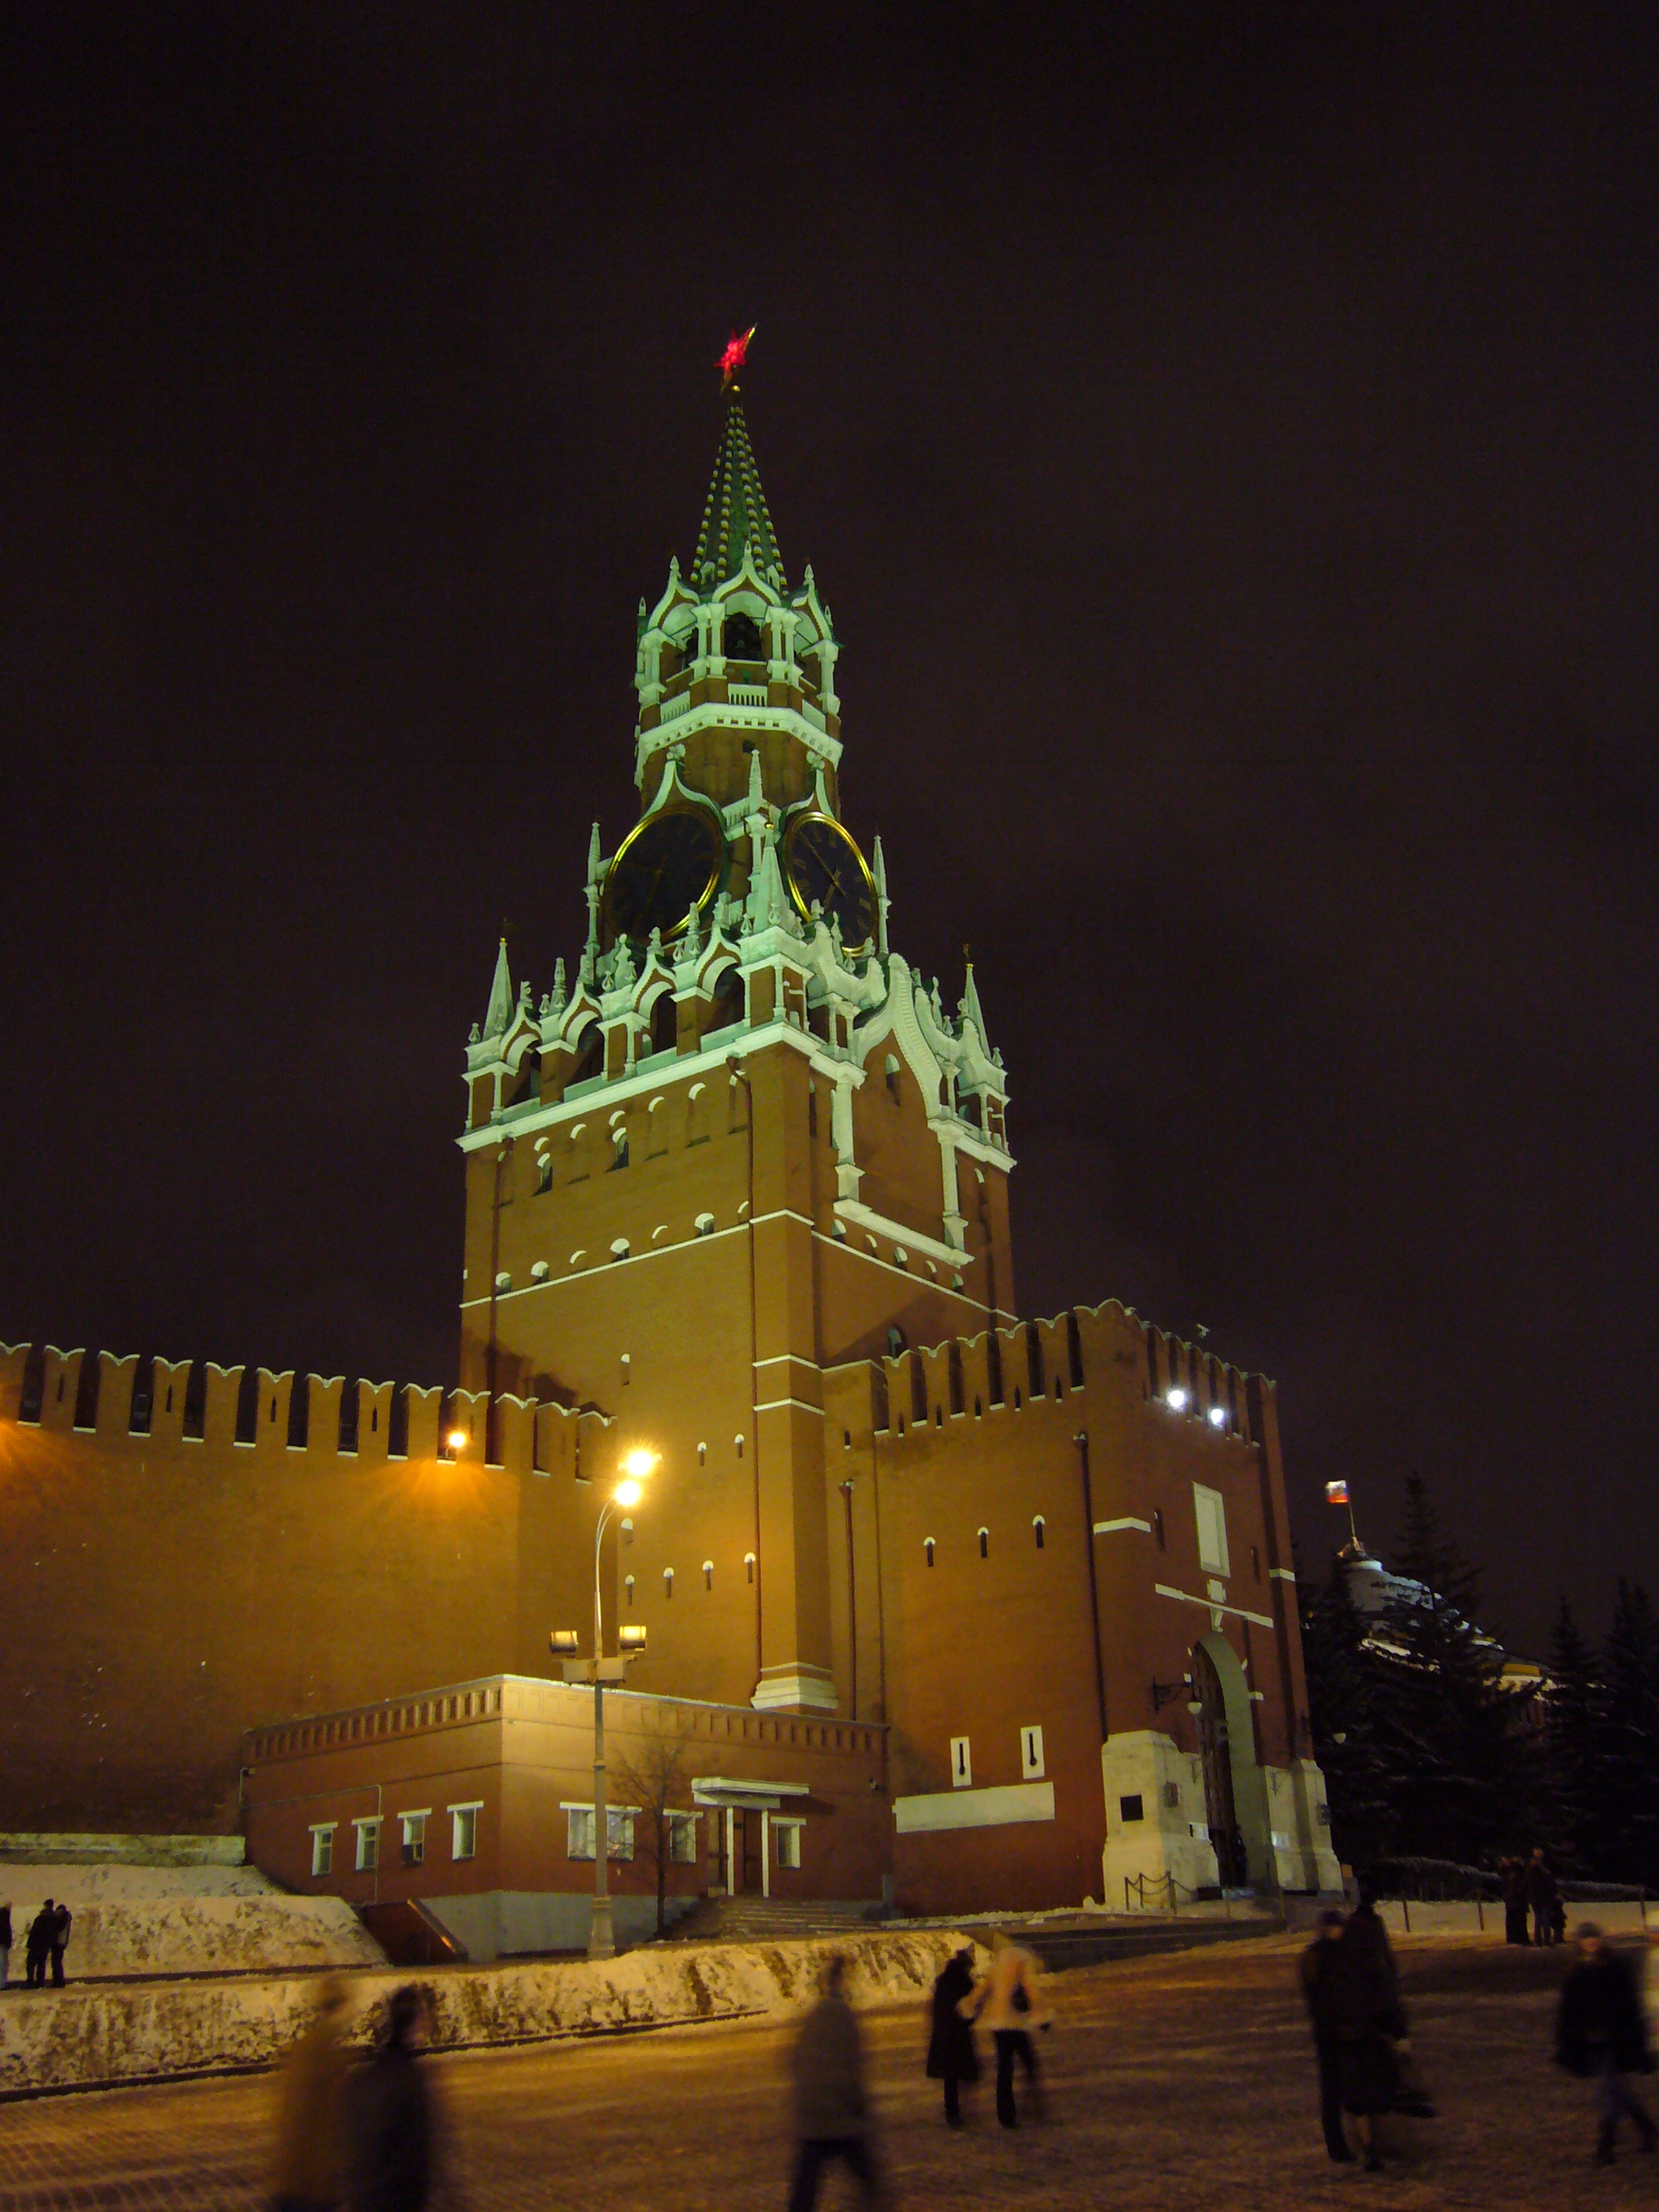 благовещенская башня московского кремля